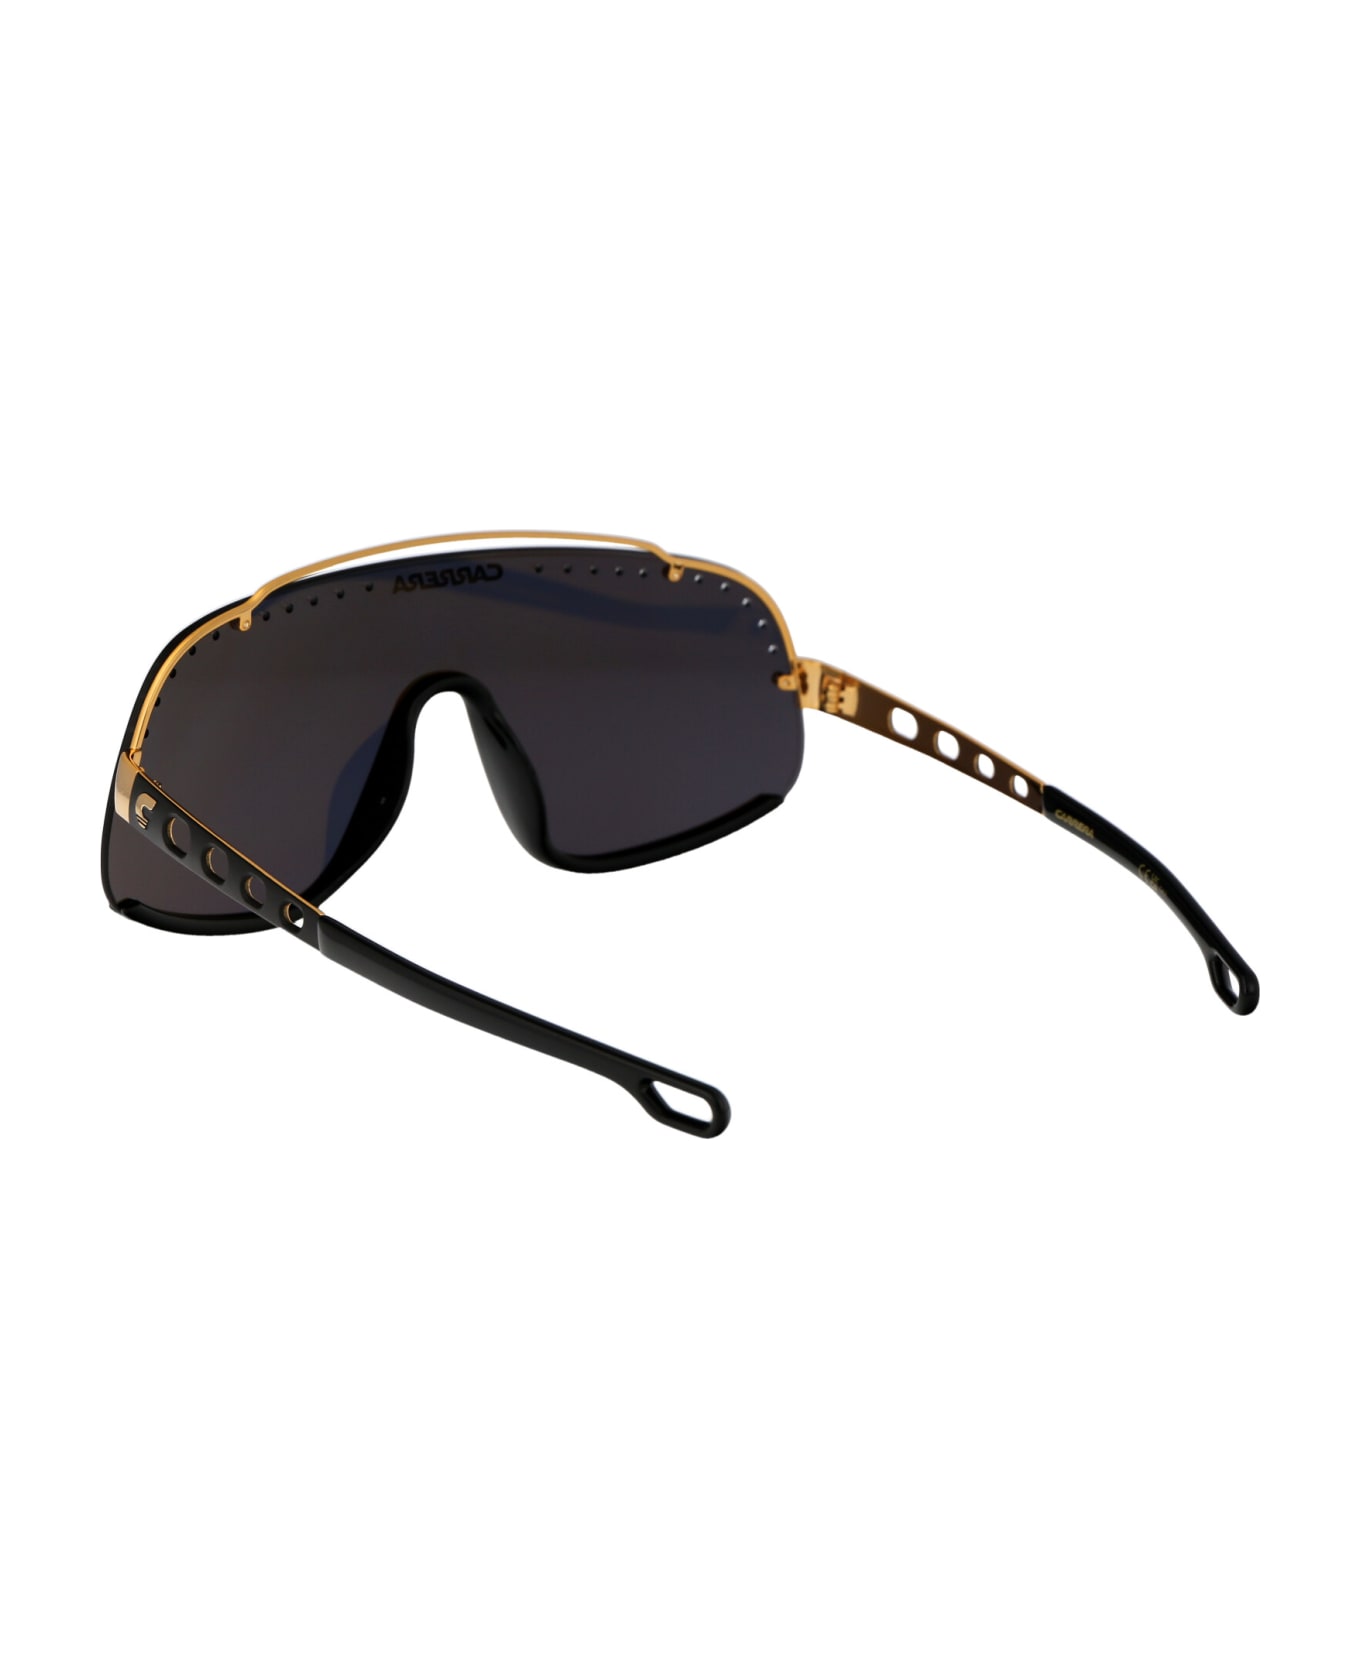 Carrera Flaglab 16 Sunglasses - 2M22K BLK GOLD B